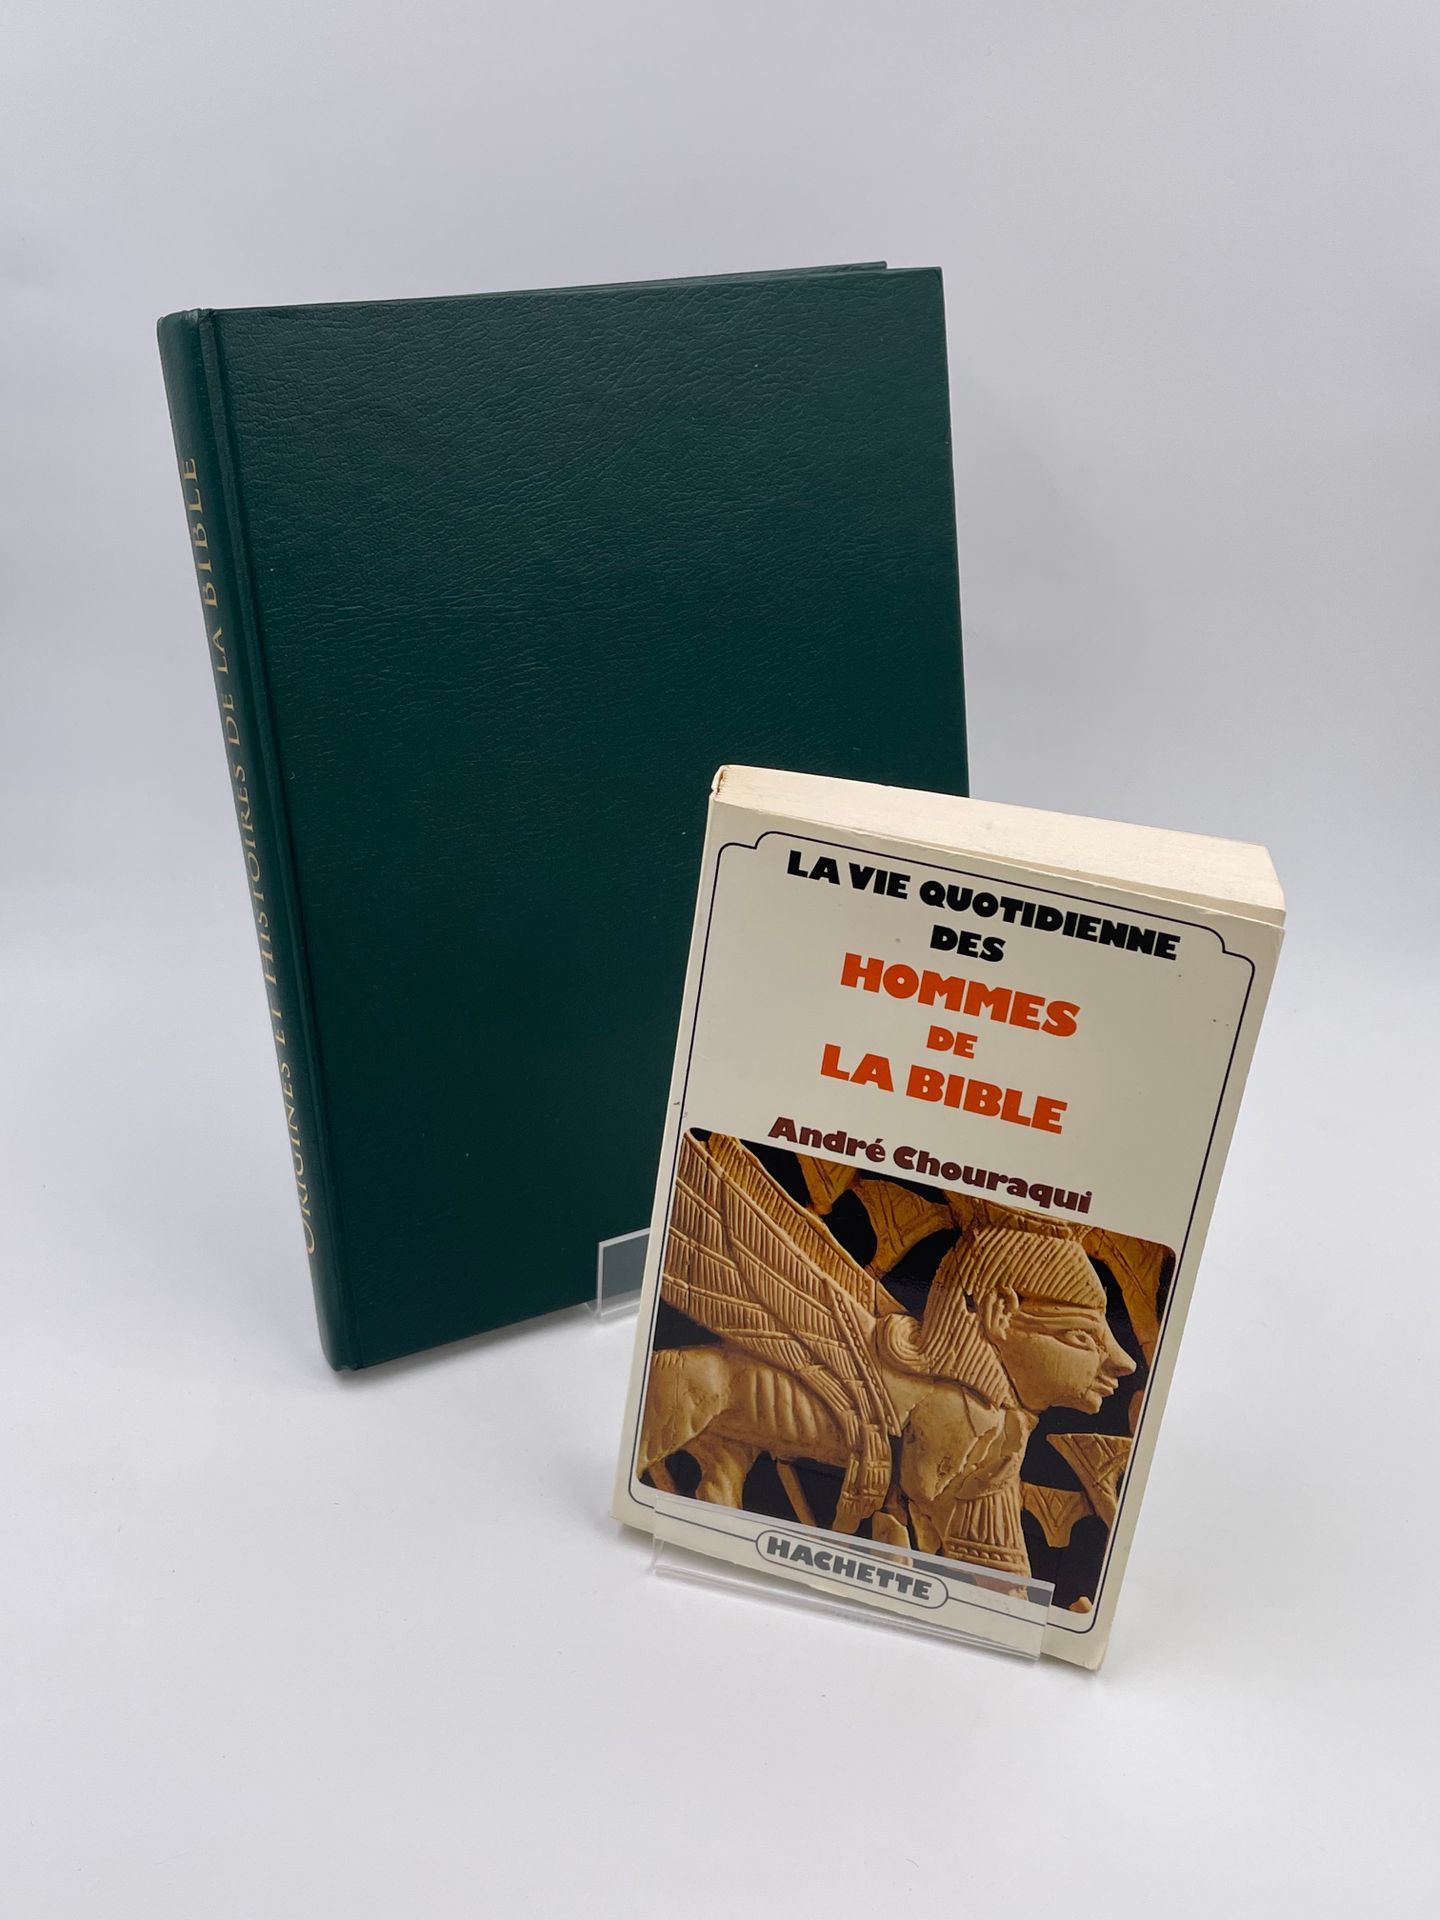 Null 2 Volumes : 

- "LA VIE QUOTIDIENNE DES HOMMES DE LA BIBLE", André Chouraqu&hellip;